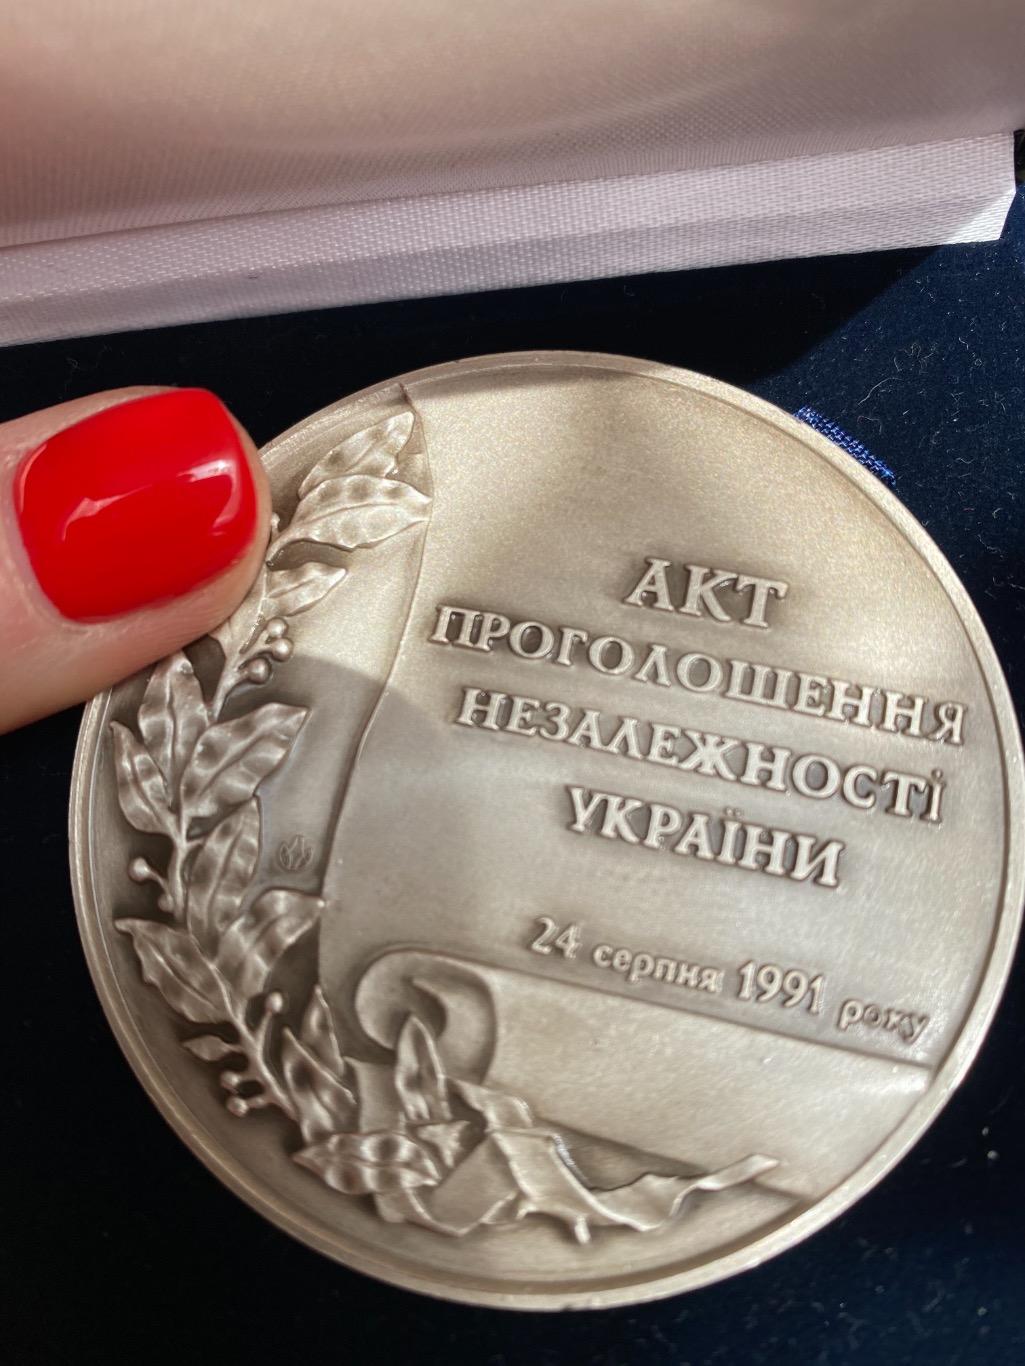 Юбилейная медаль «10 лет независимости Украины» — государственная награда 1